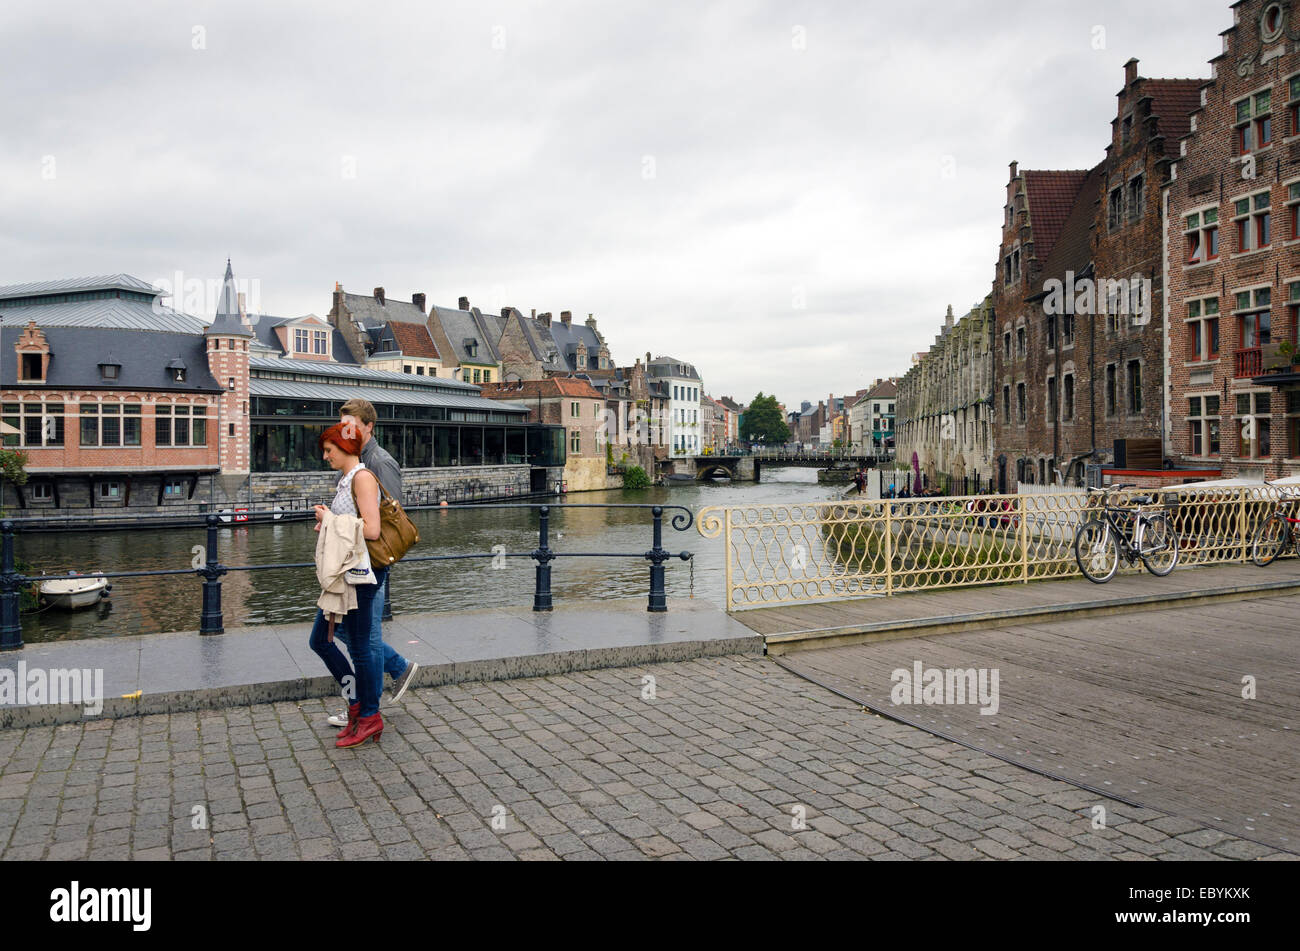 Gent, Belgien - 25 Oktober: Eine nicht identifizierte junge Paar in der Altstadt von Gent, Belgien am 25. Oktober 2013. Gent ist eine cit Stockfoto